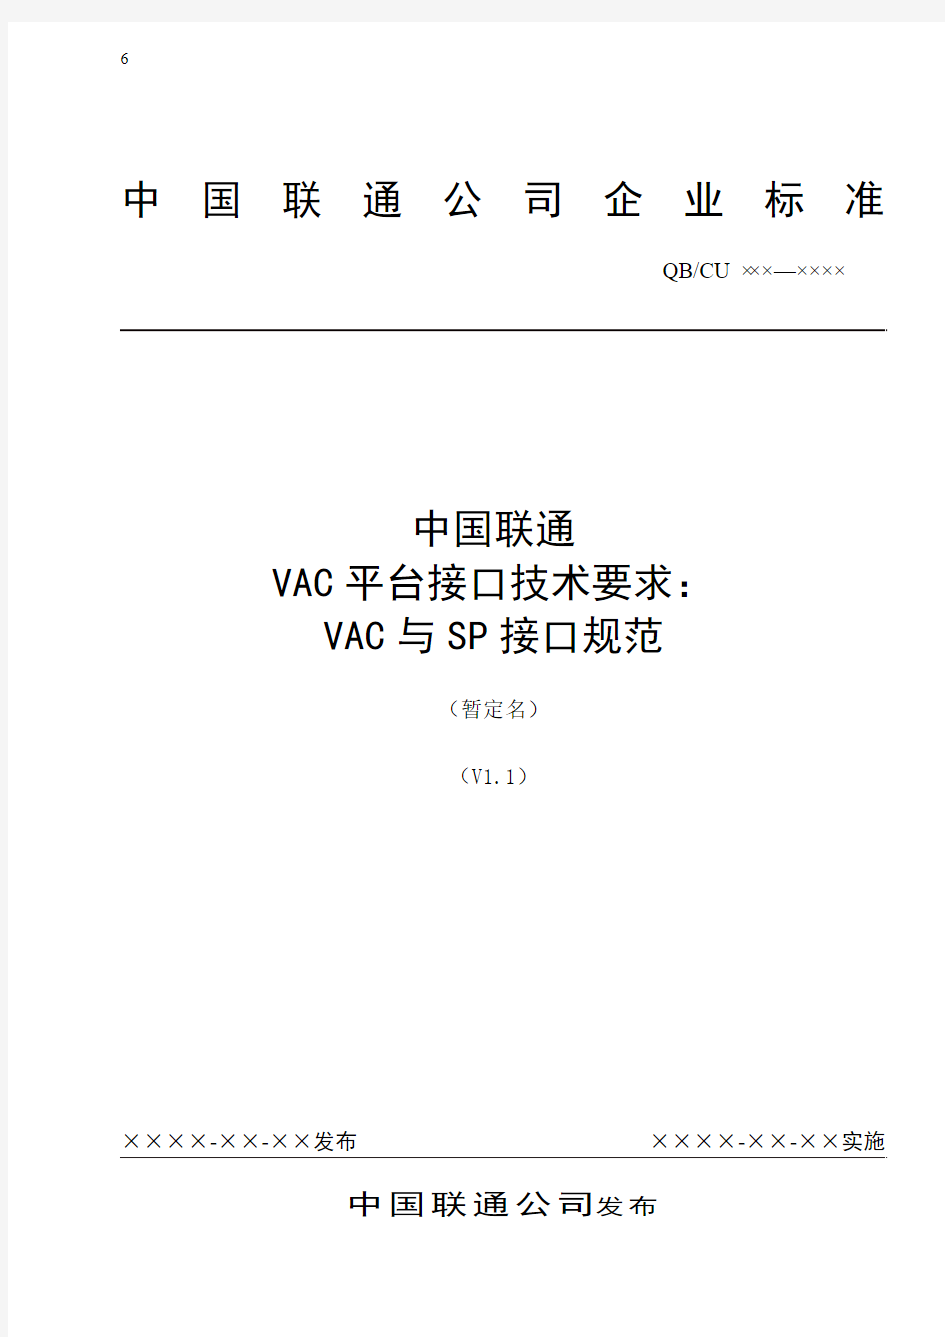 中国联通增值业务鉴权中心接口规范-VAC与SP接口规范-0214